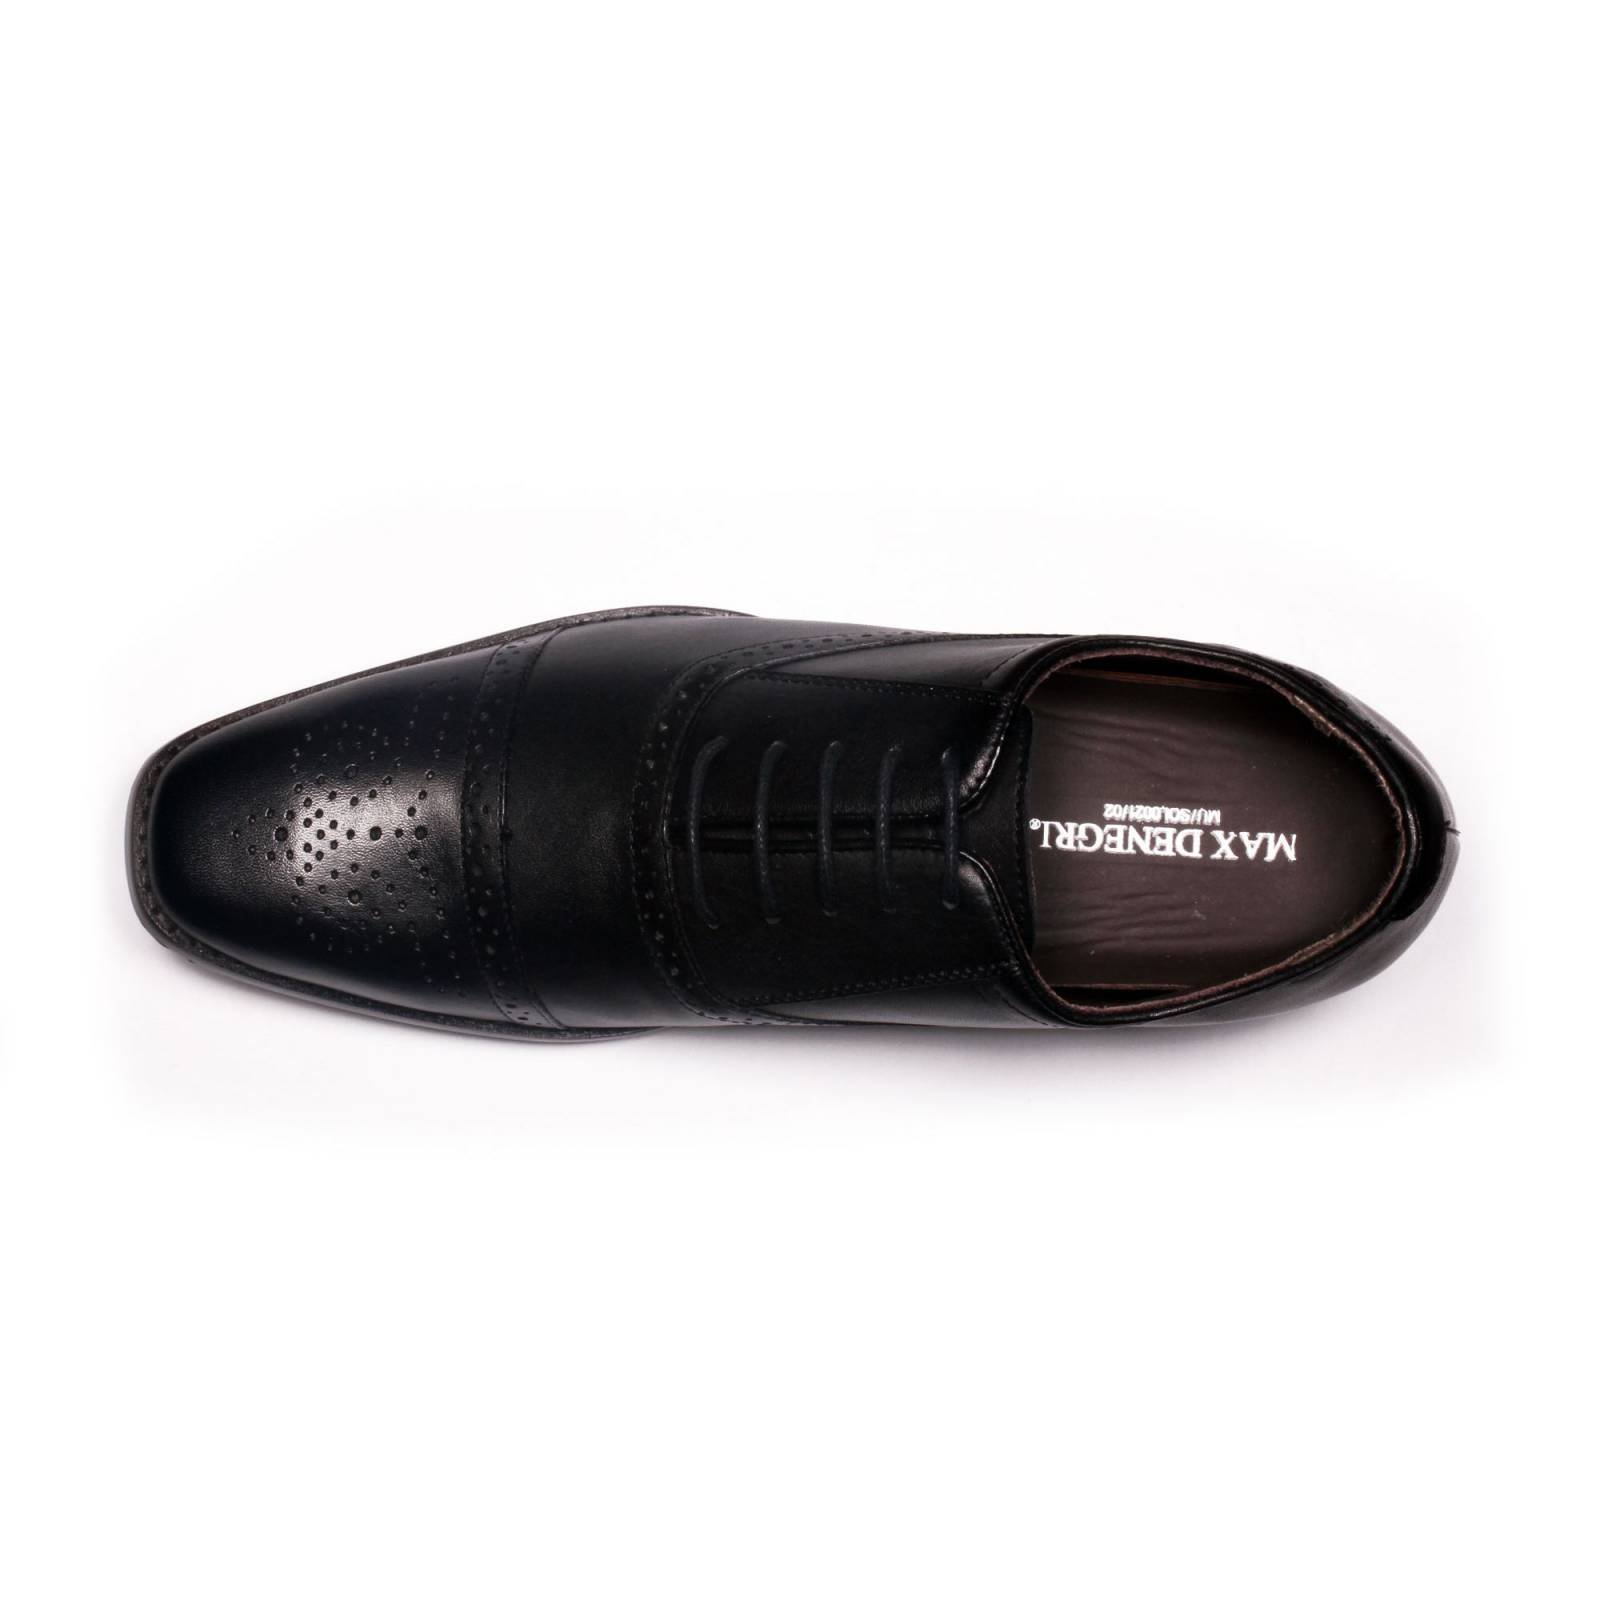 Zapato Formal British Negro Max Denegri +7cms De Altura